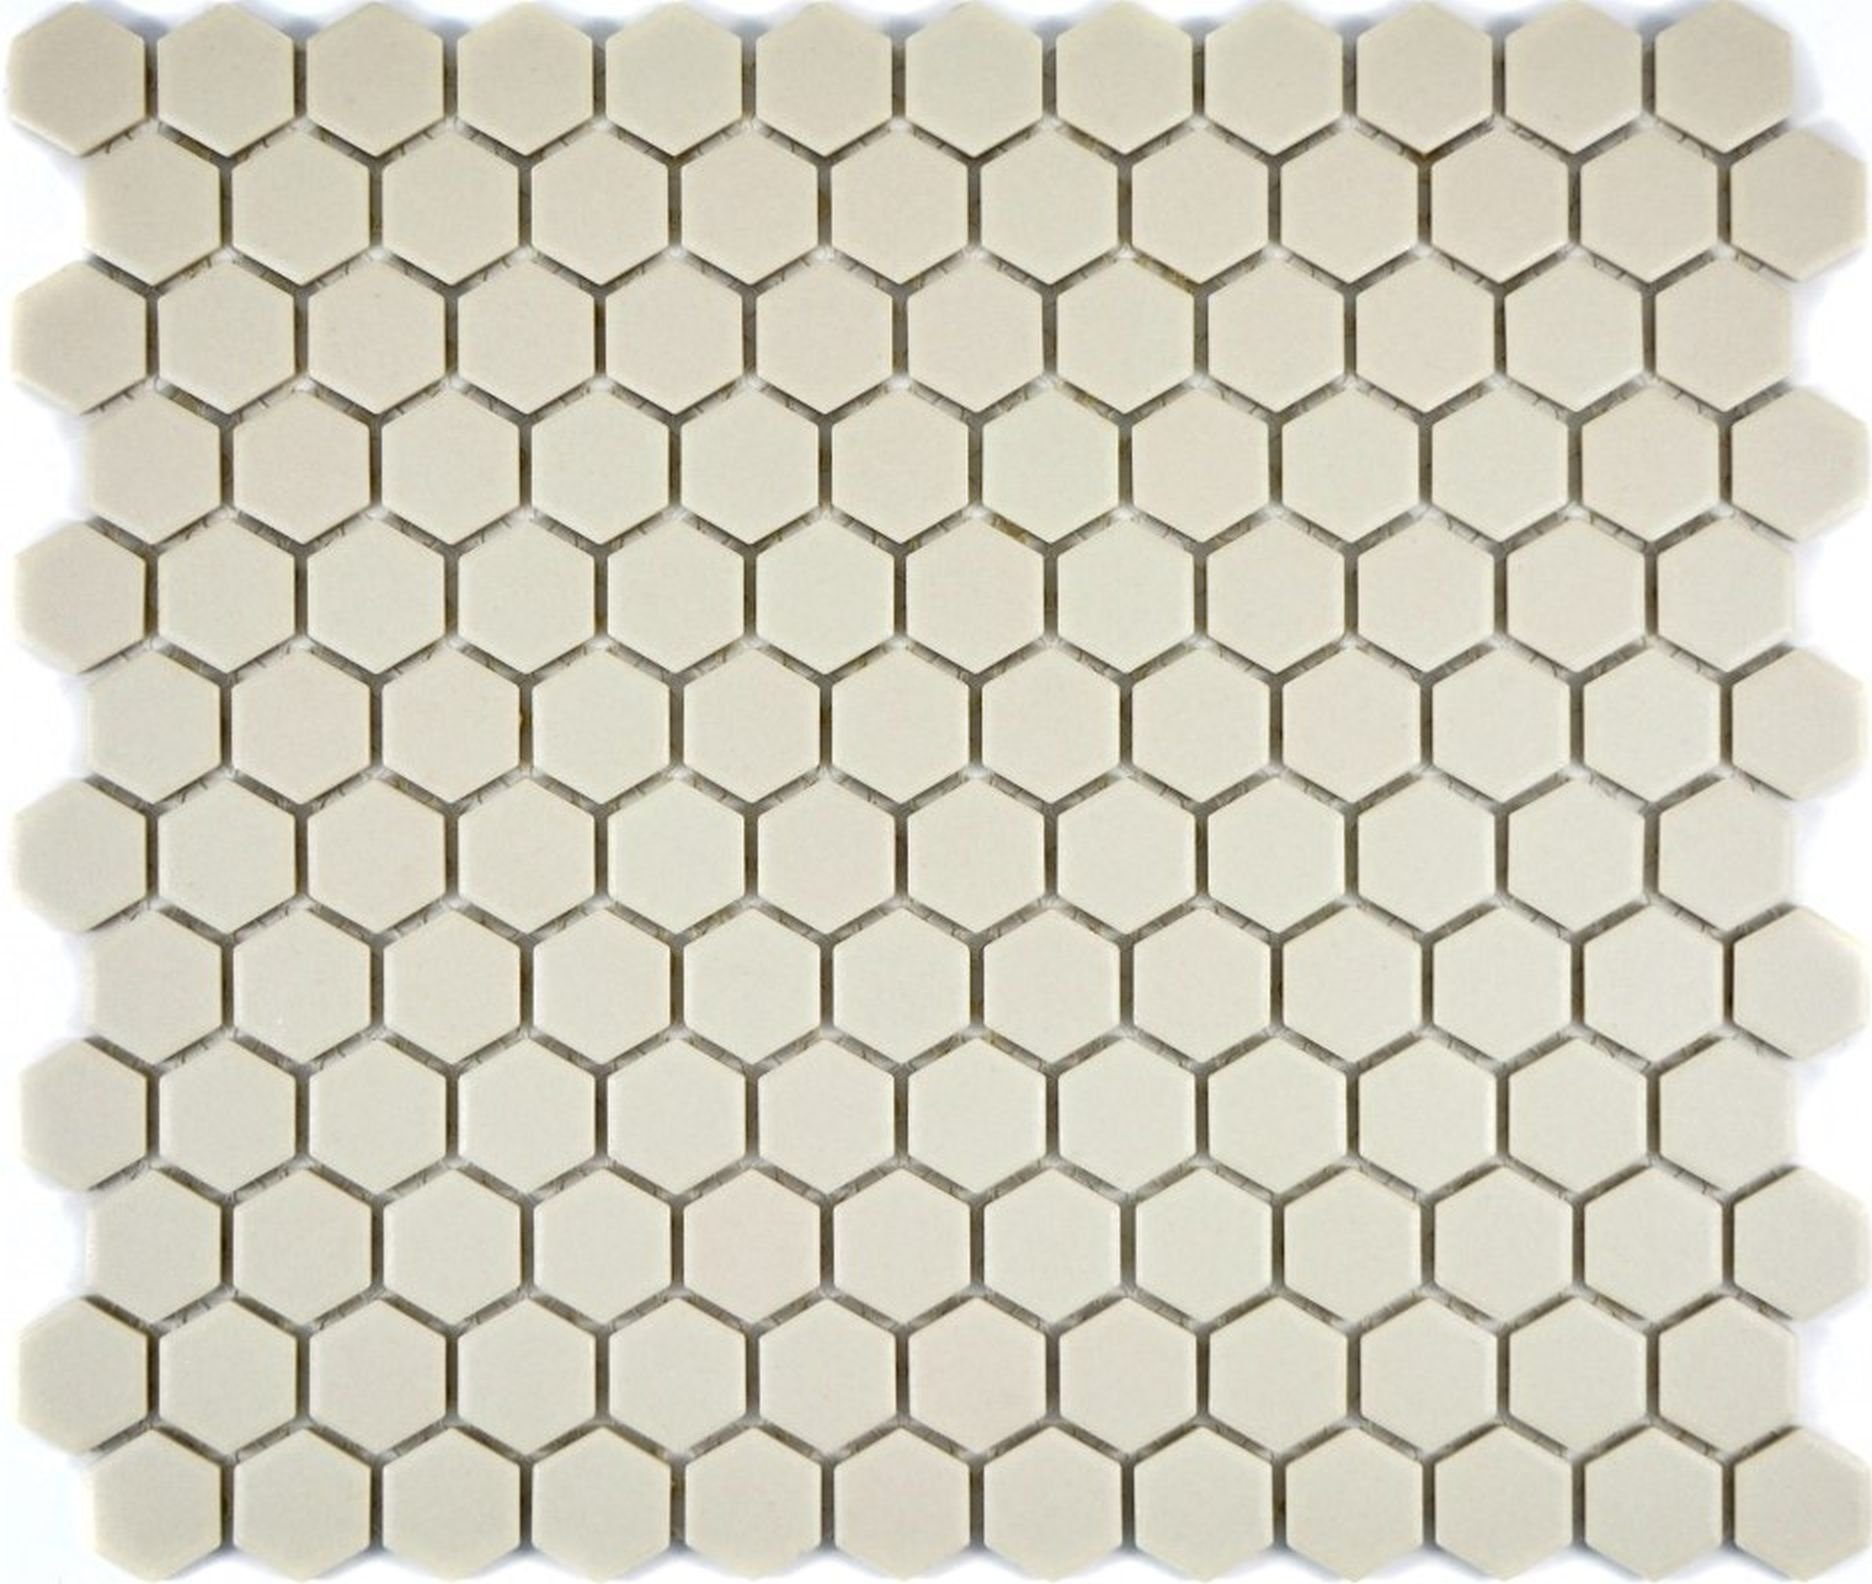 Mosani Fliese hellbeige Sechseck Bodenfliese Keramik Mosaik Boden weiss rutschsicher